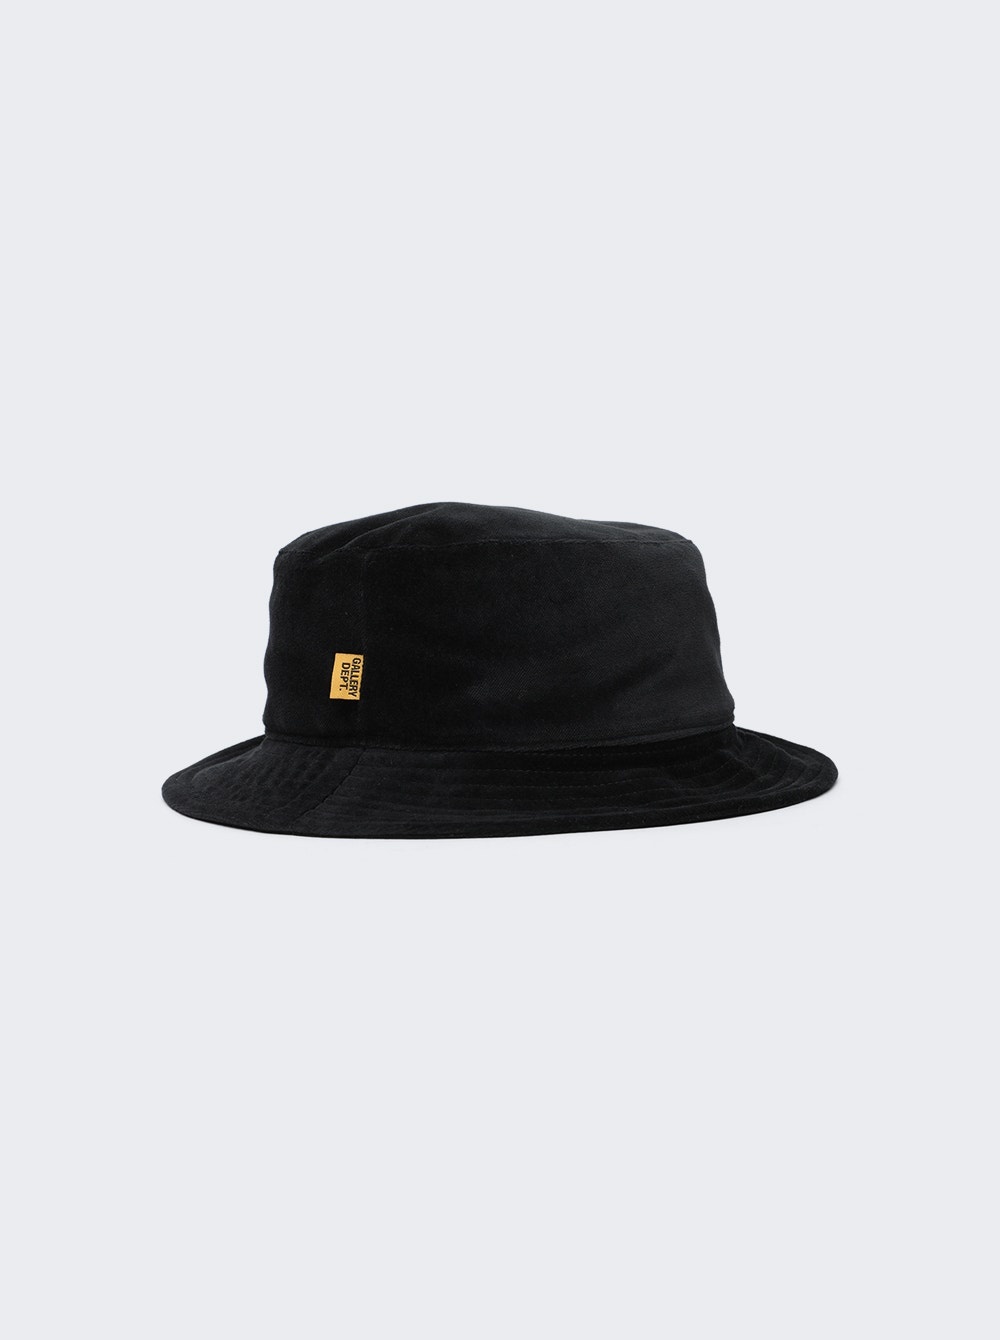 Rodman Velvet Bucket Hat Black - 5